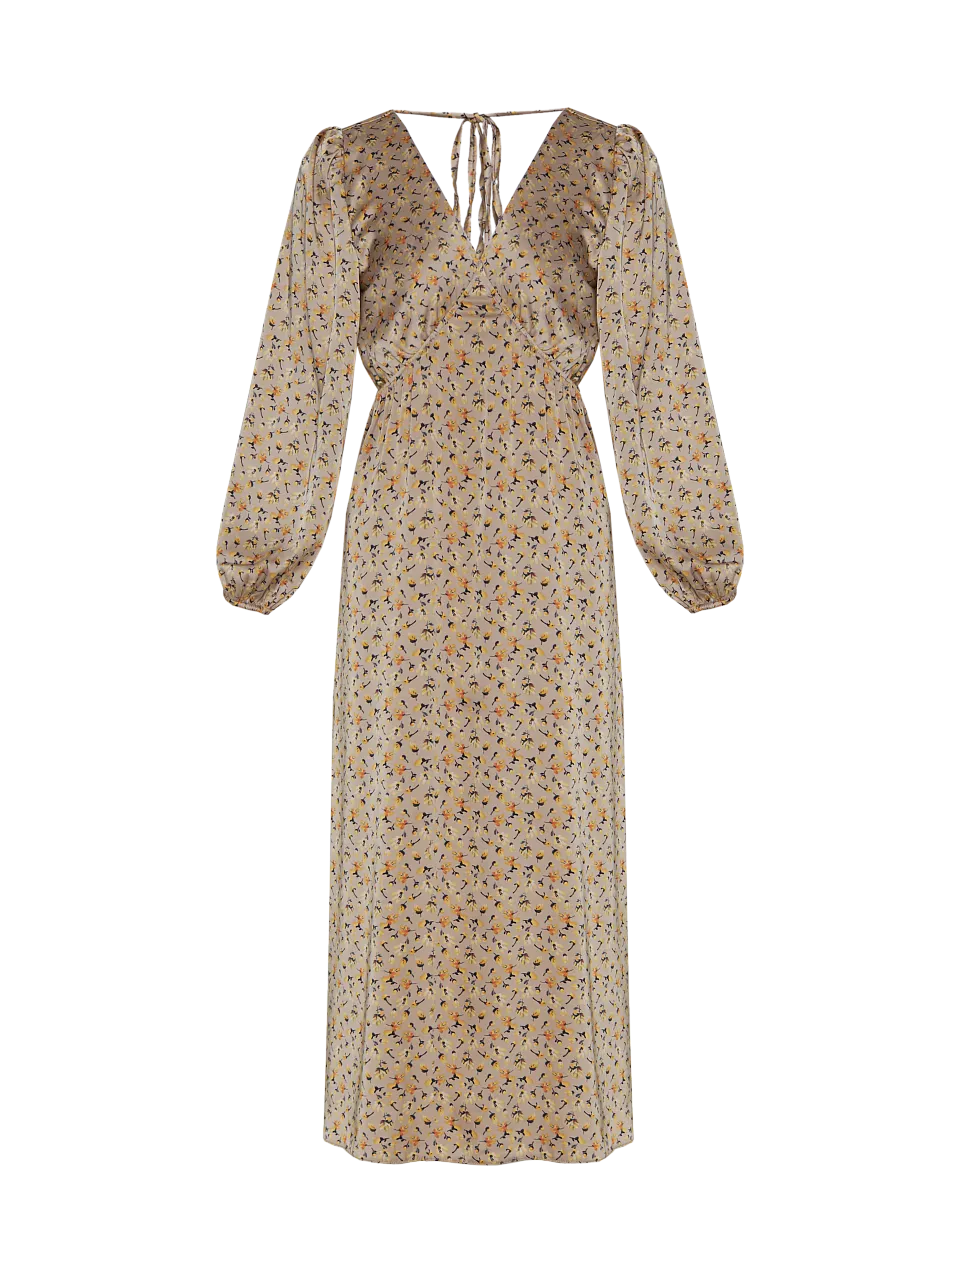 Жіноча сукня Stimma Урія, колір - Бежевий/жовта квітка